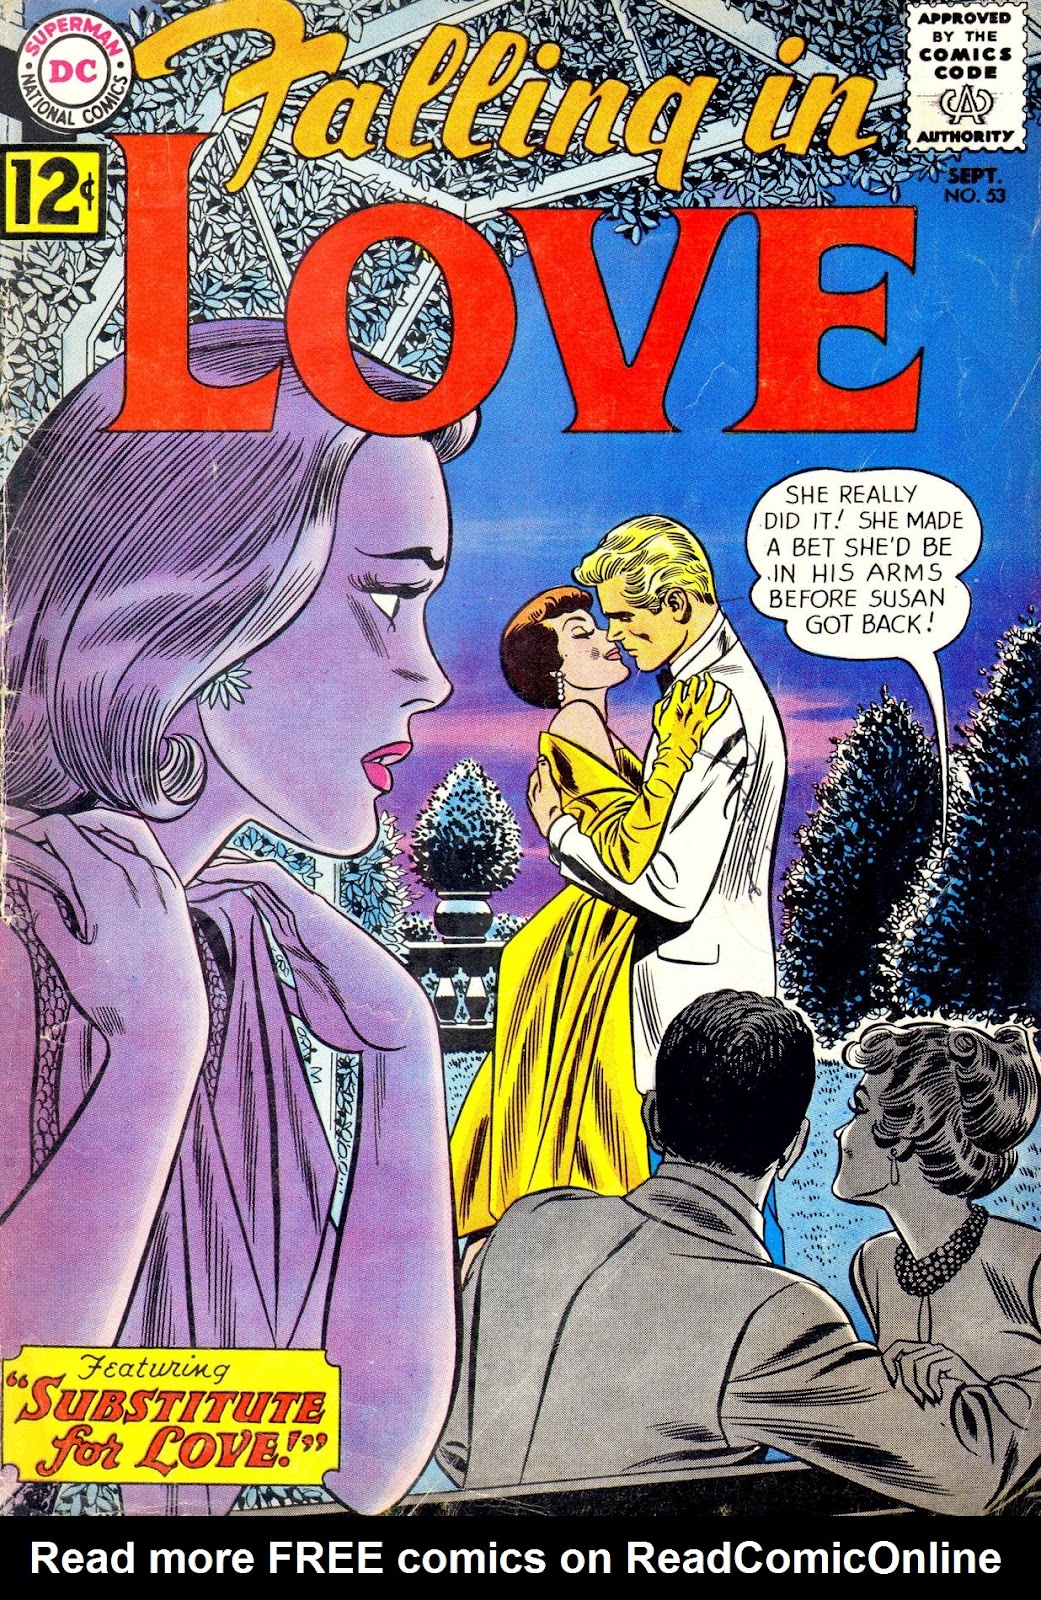 1962 Комиксы. Issue love